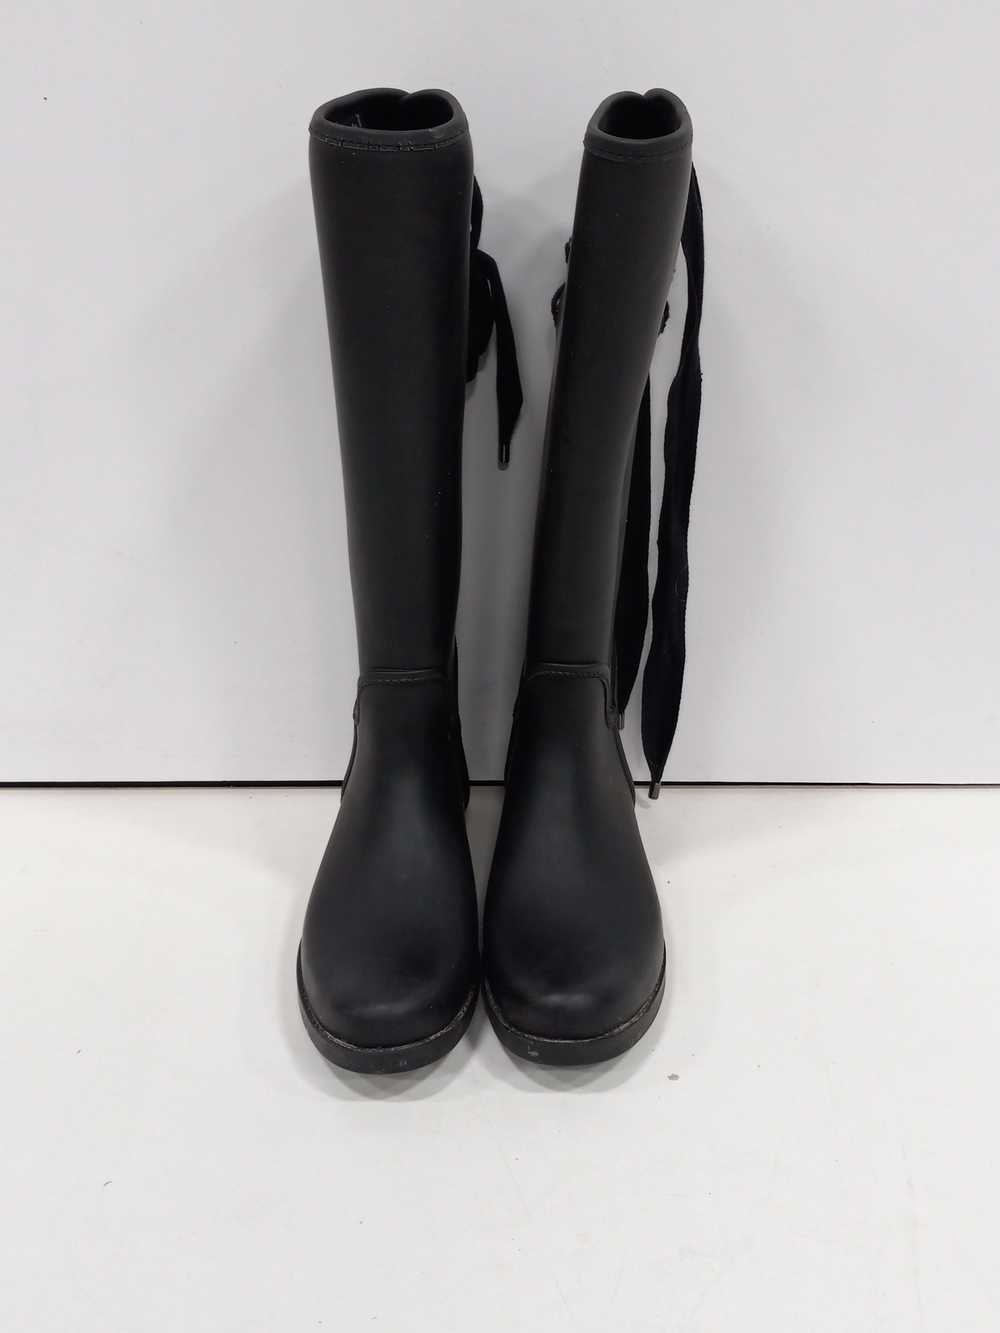 Coach Women's Black Boots Size 8B - image 1